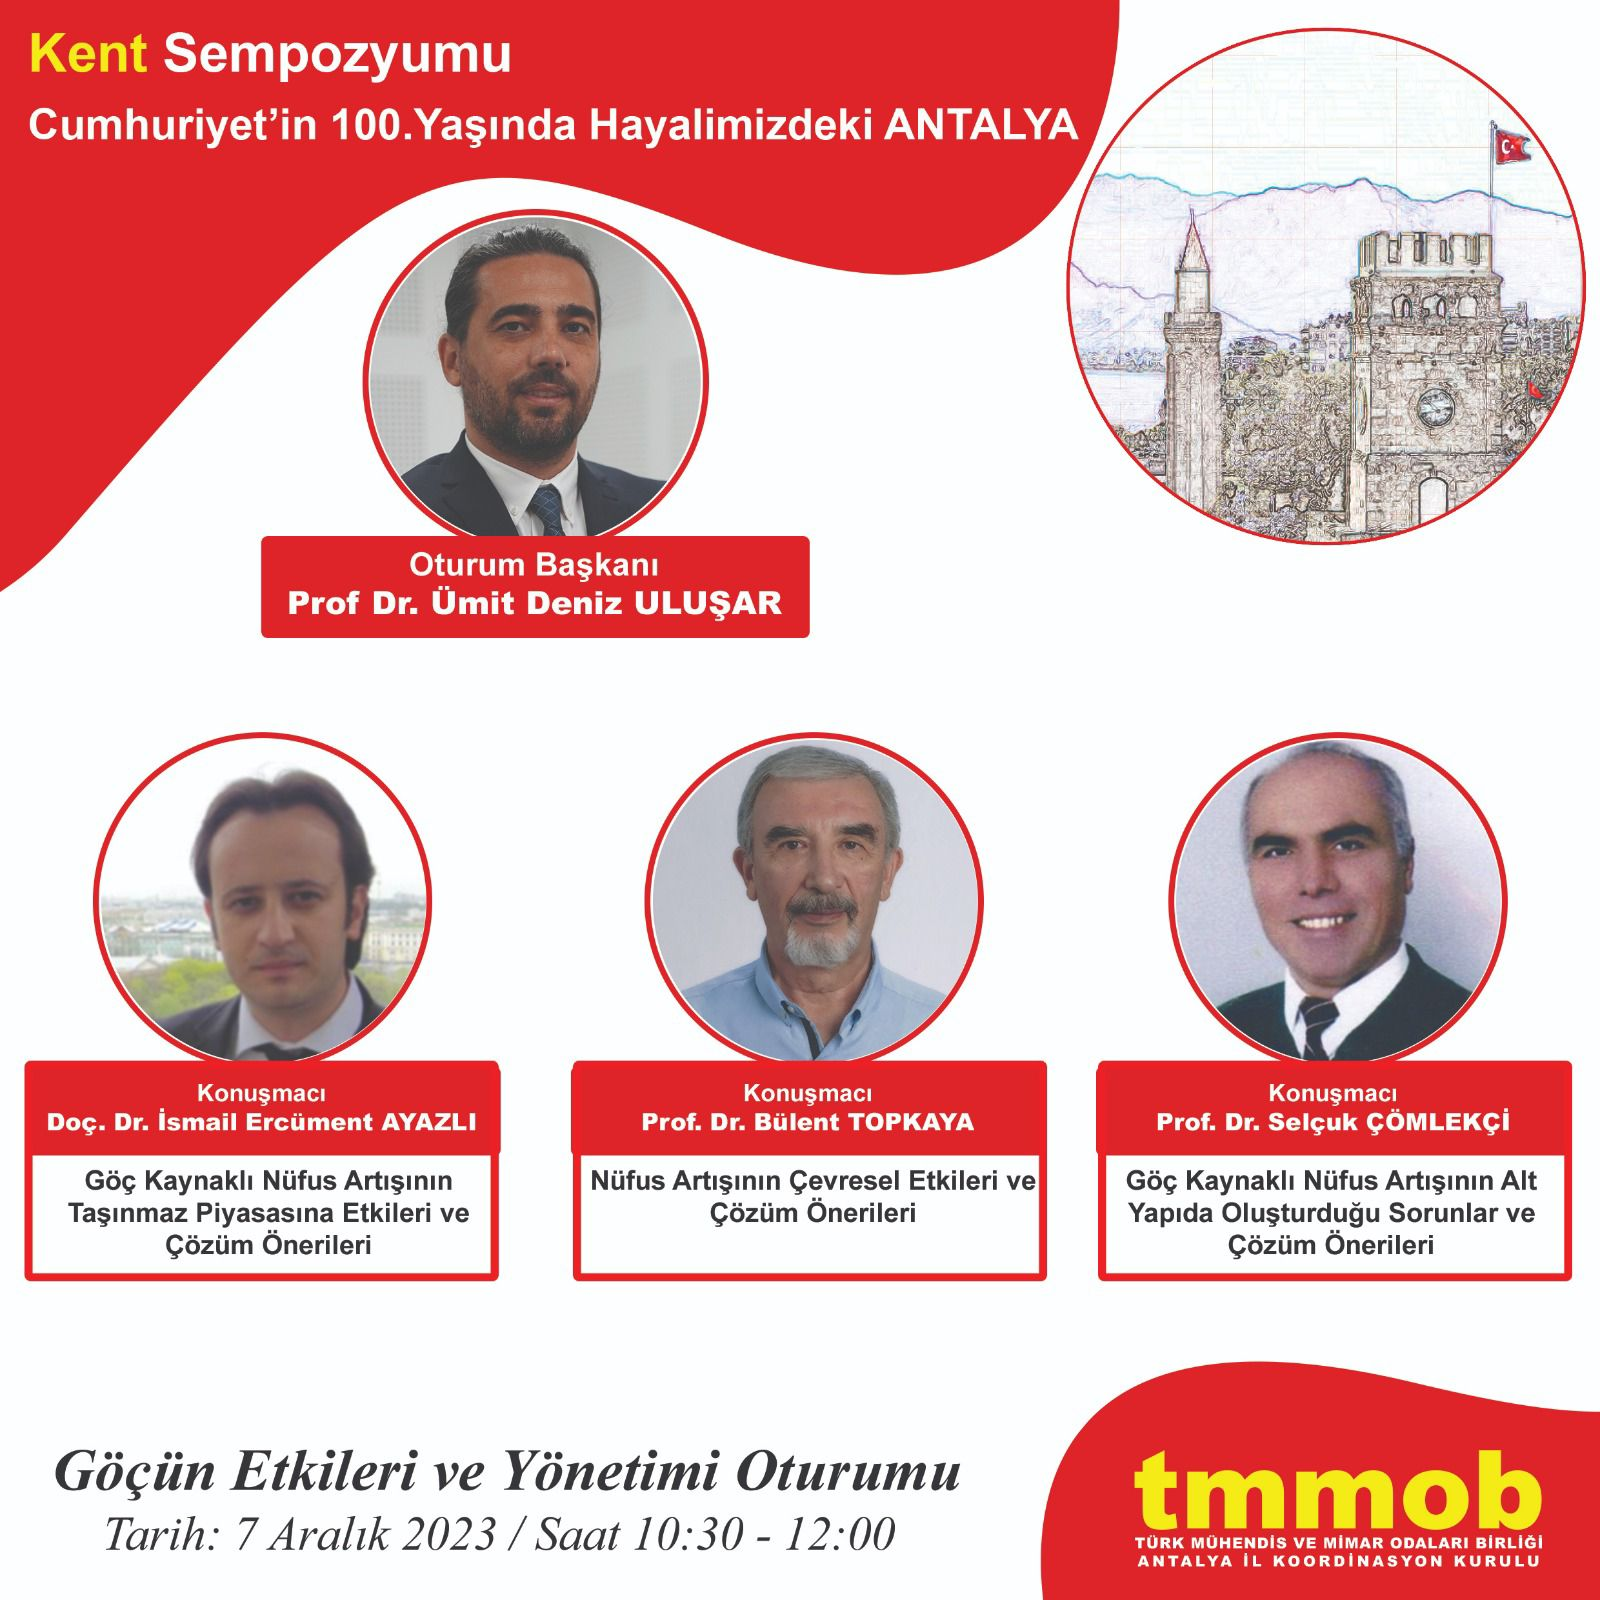 TMMOB Antalya Kent Sempozyumu:  Göçün Etkileri ve Yönetimi Oturumu